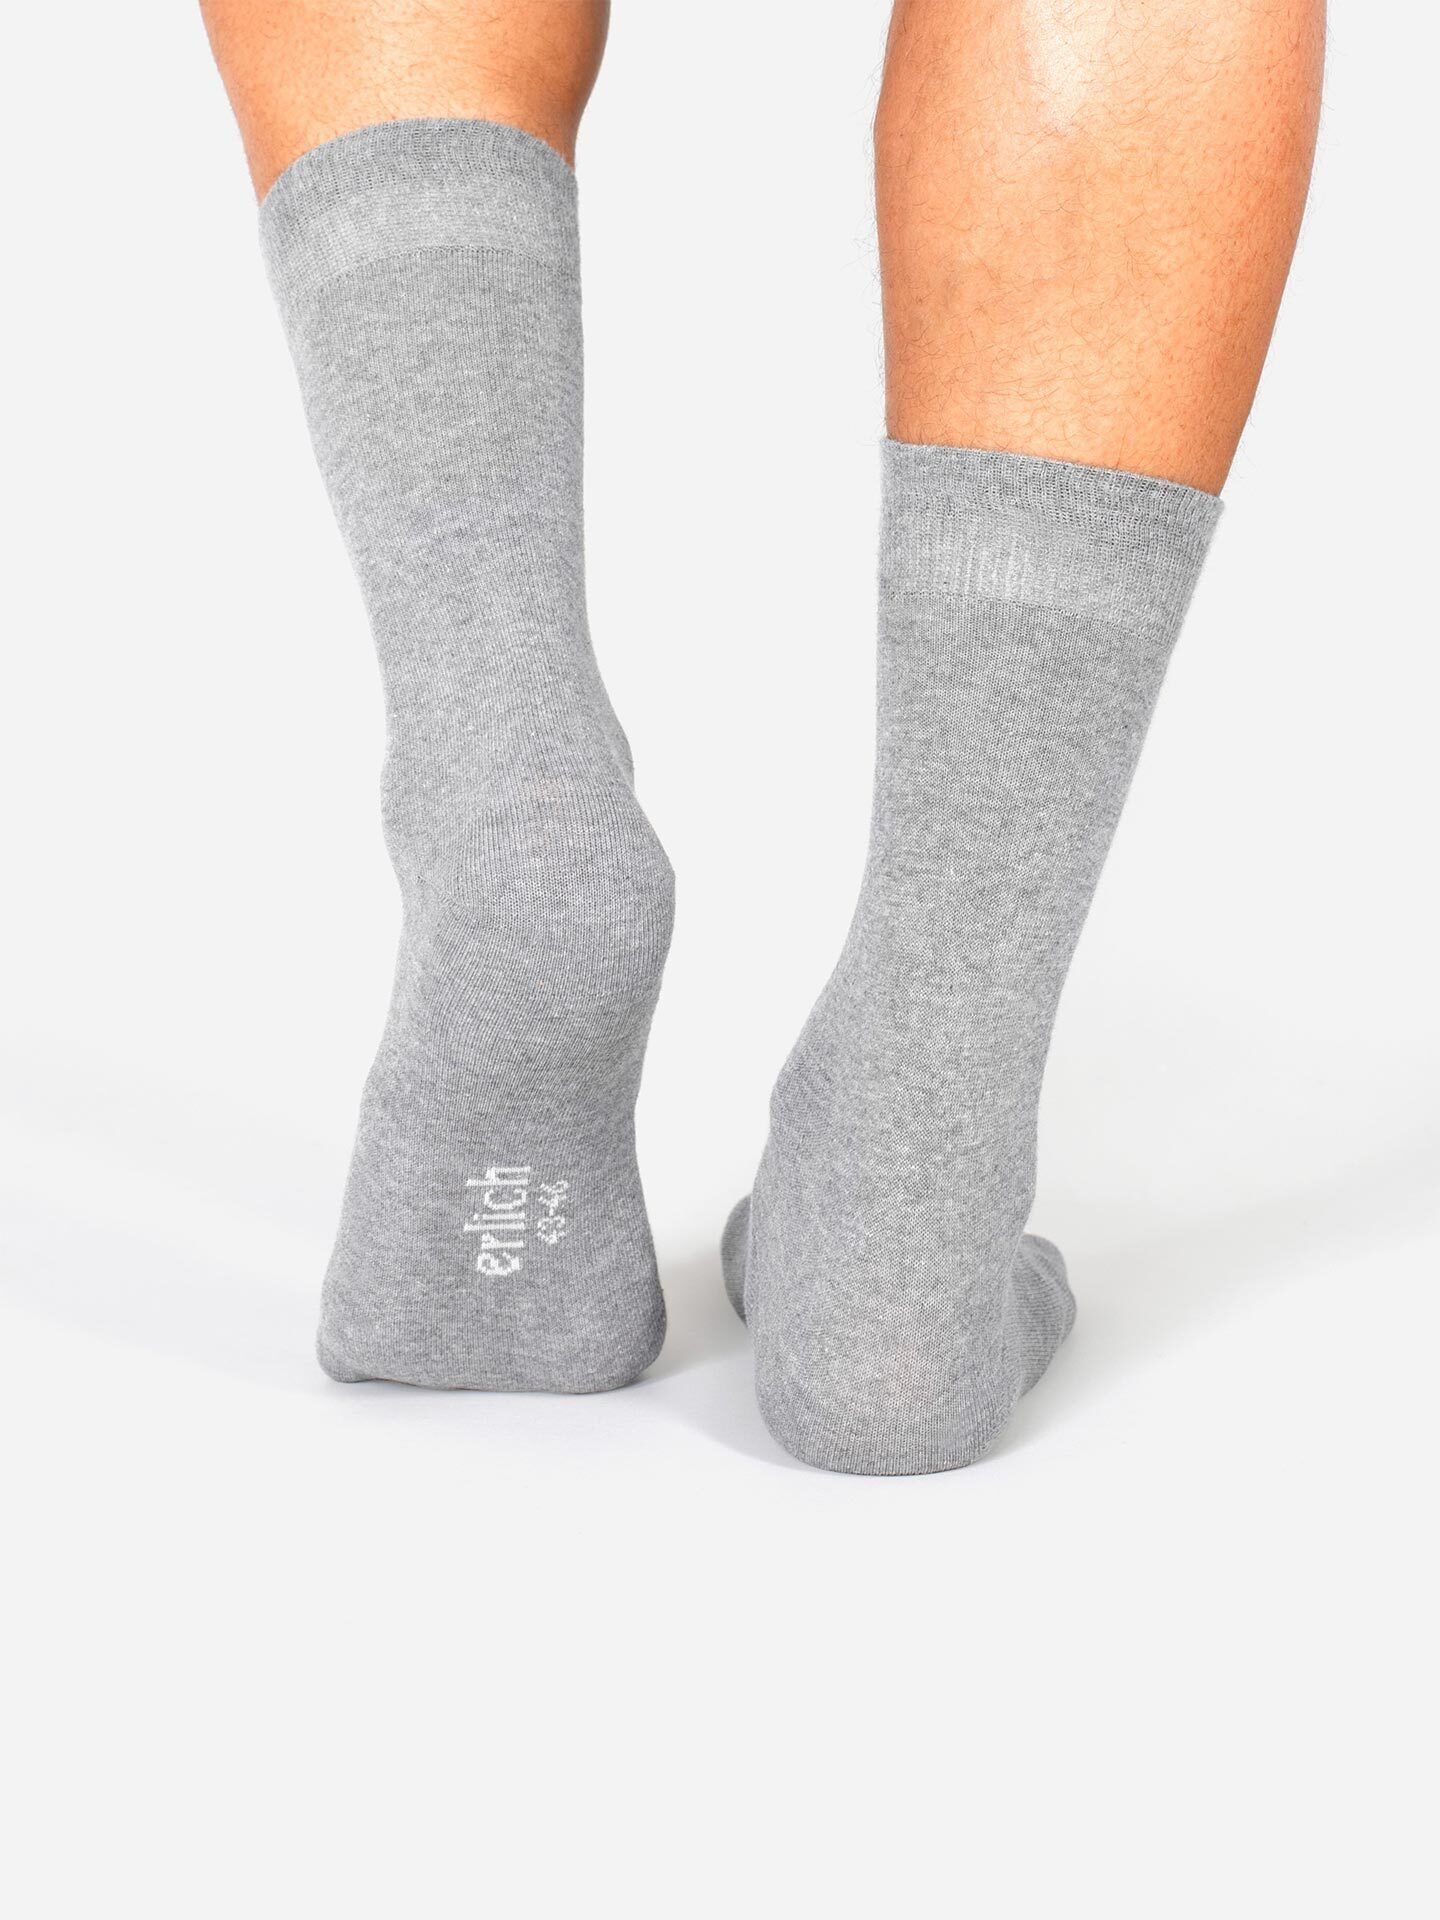 Erlich Textil Socken Maxi hellgrau-melange (3-Paar)